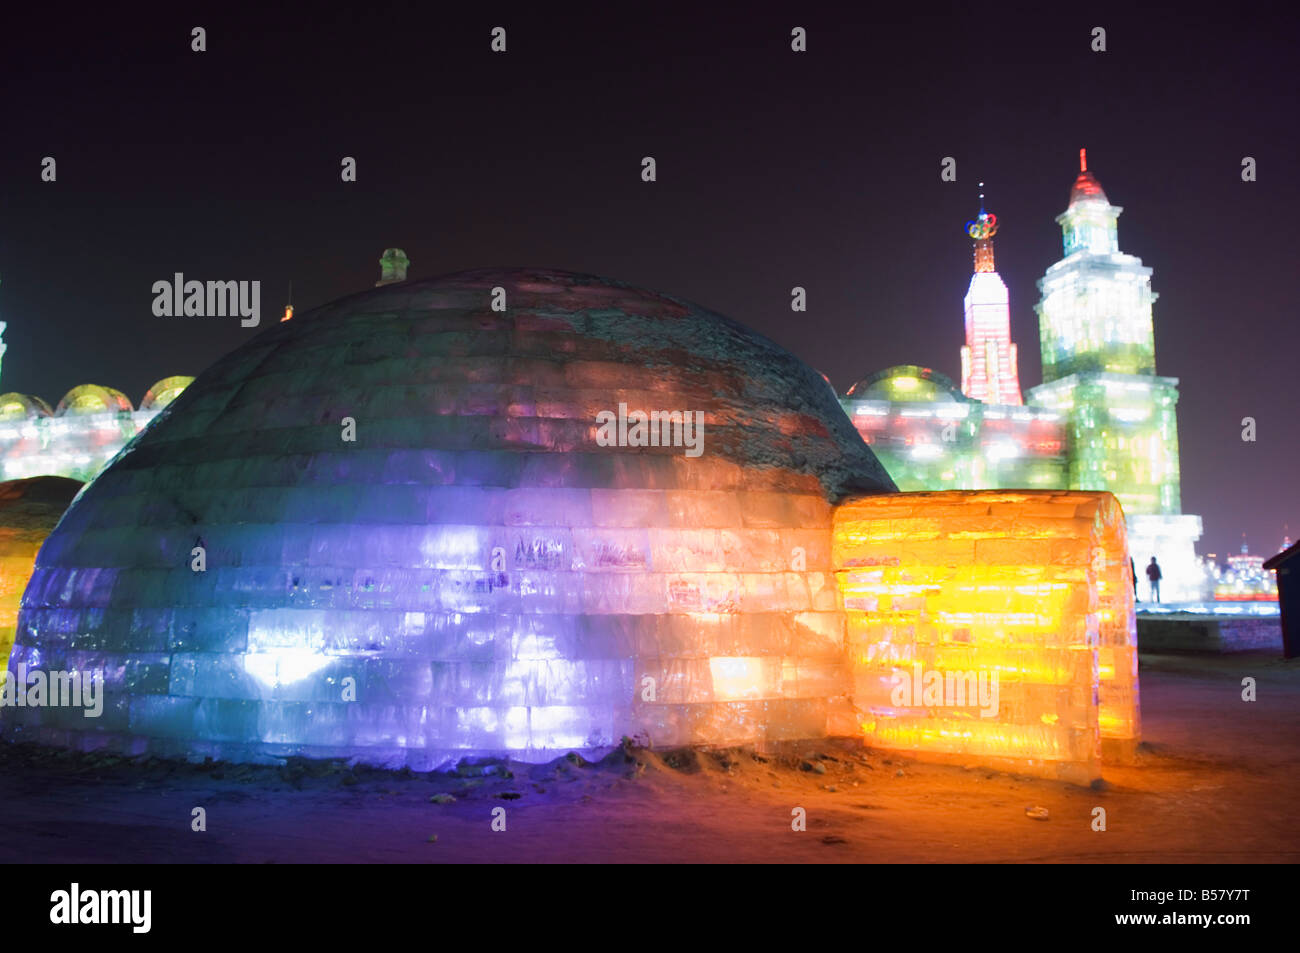 Un igloo sculpture de glace illuminée la nuit au festival de lanternes de  glace, Harbin, province de Heilongjiang, au nord-est de la Chine, Chine  Photo Stock - Alamy